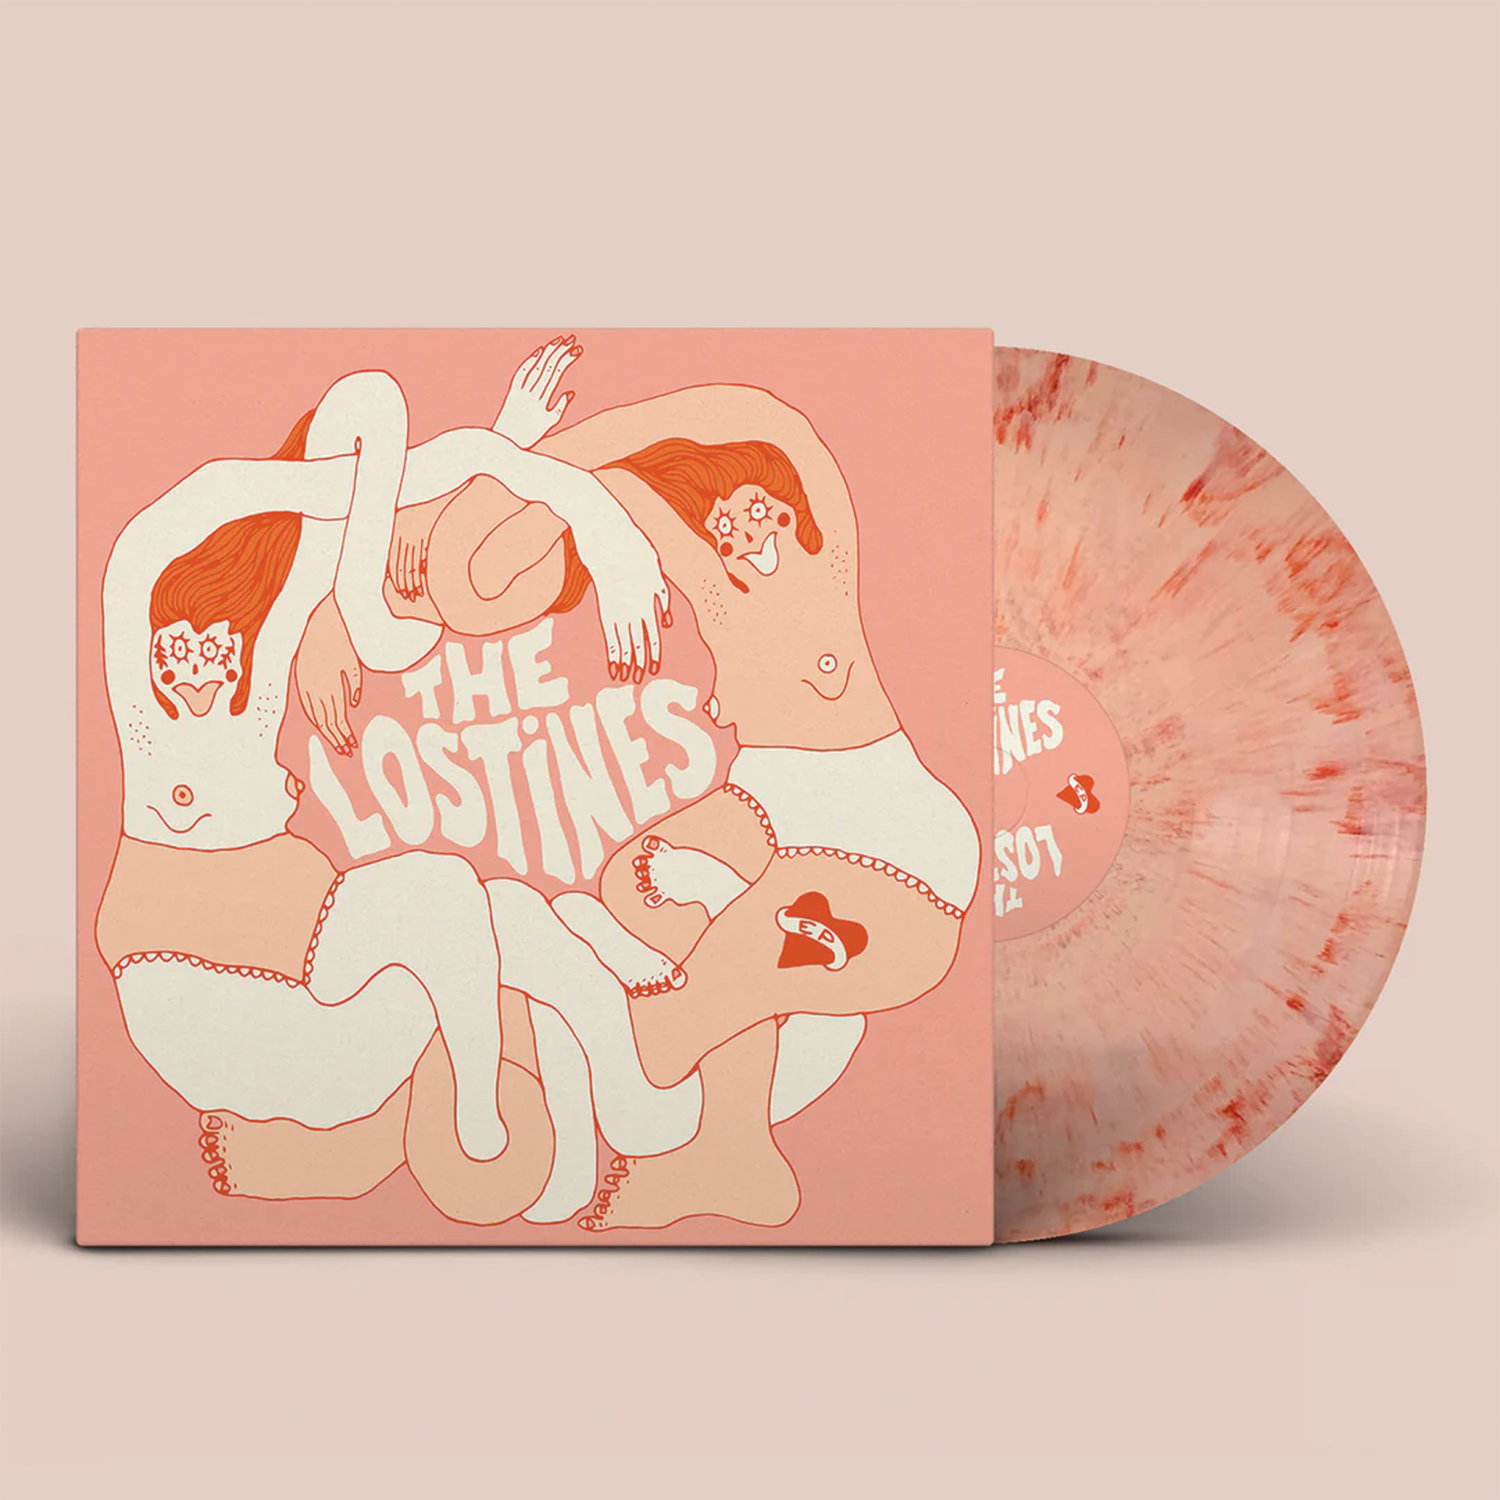 The Lostines - "The Lostines EP" 180g Pink Smoke Vinyl